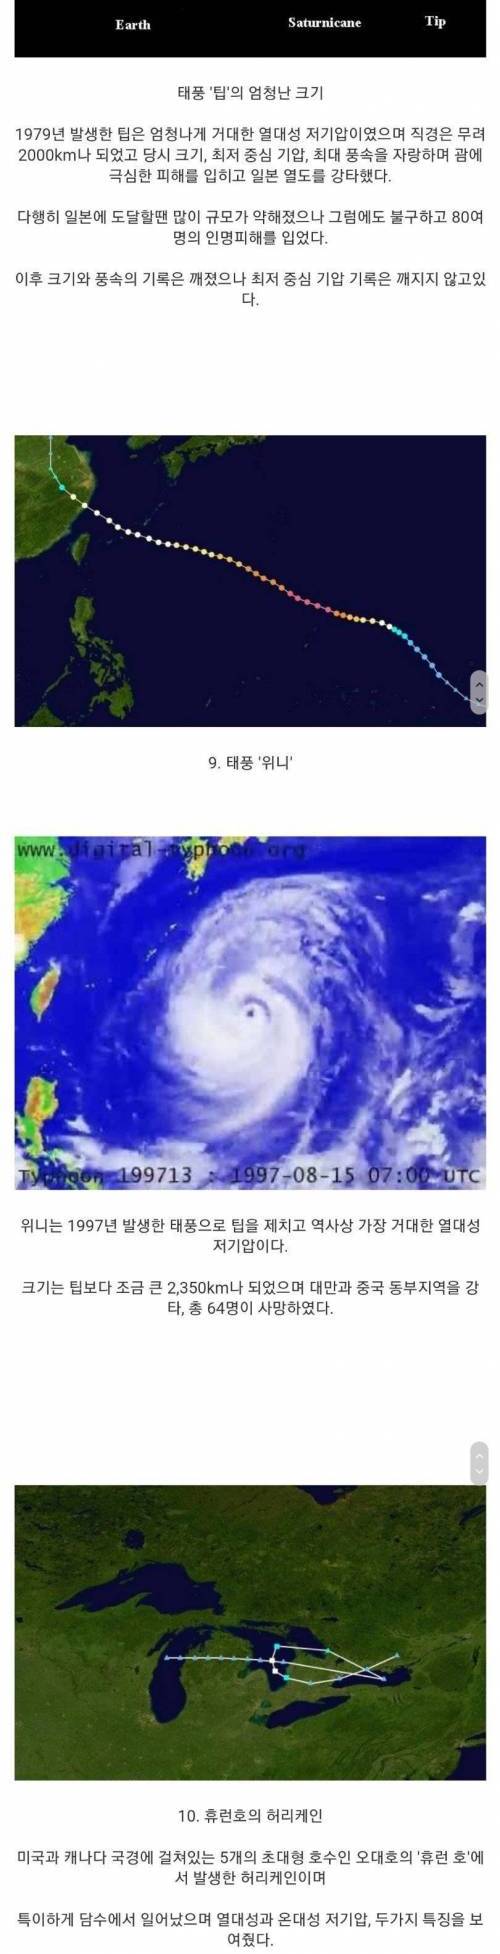 [스압] 세계의 특이한 태풍.jpg